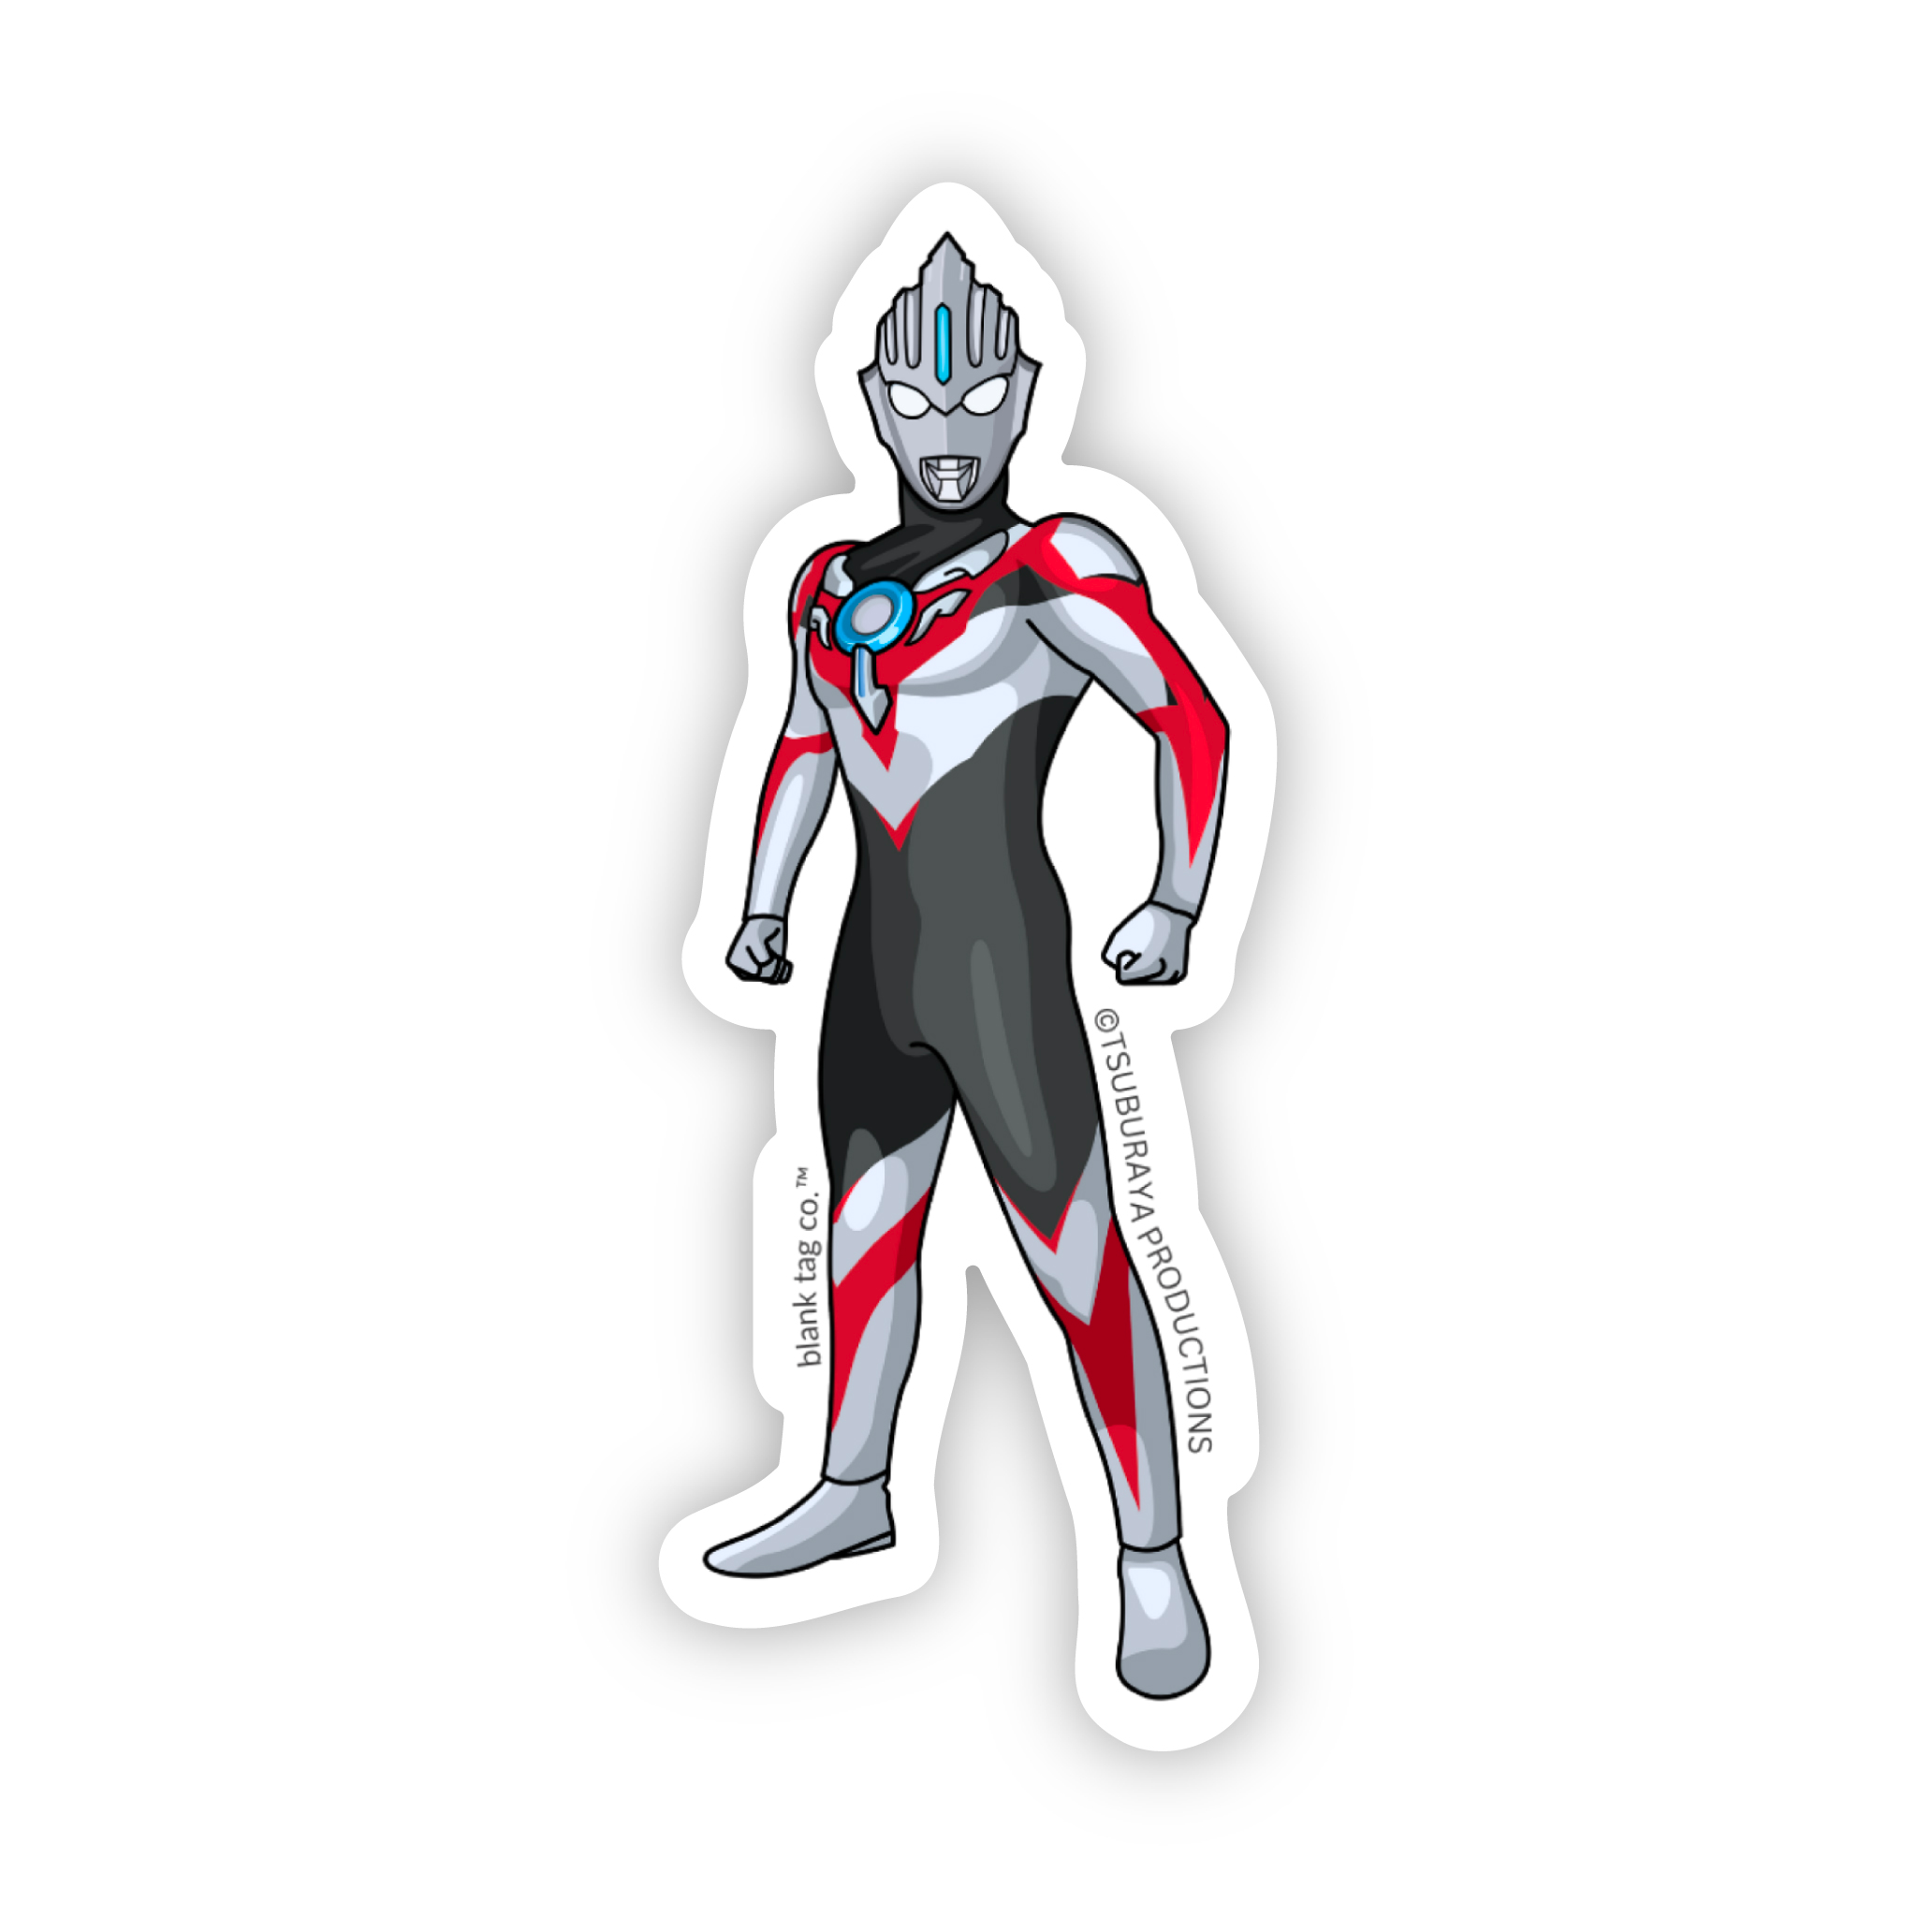 The Ultraman Orb Sticker